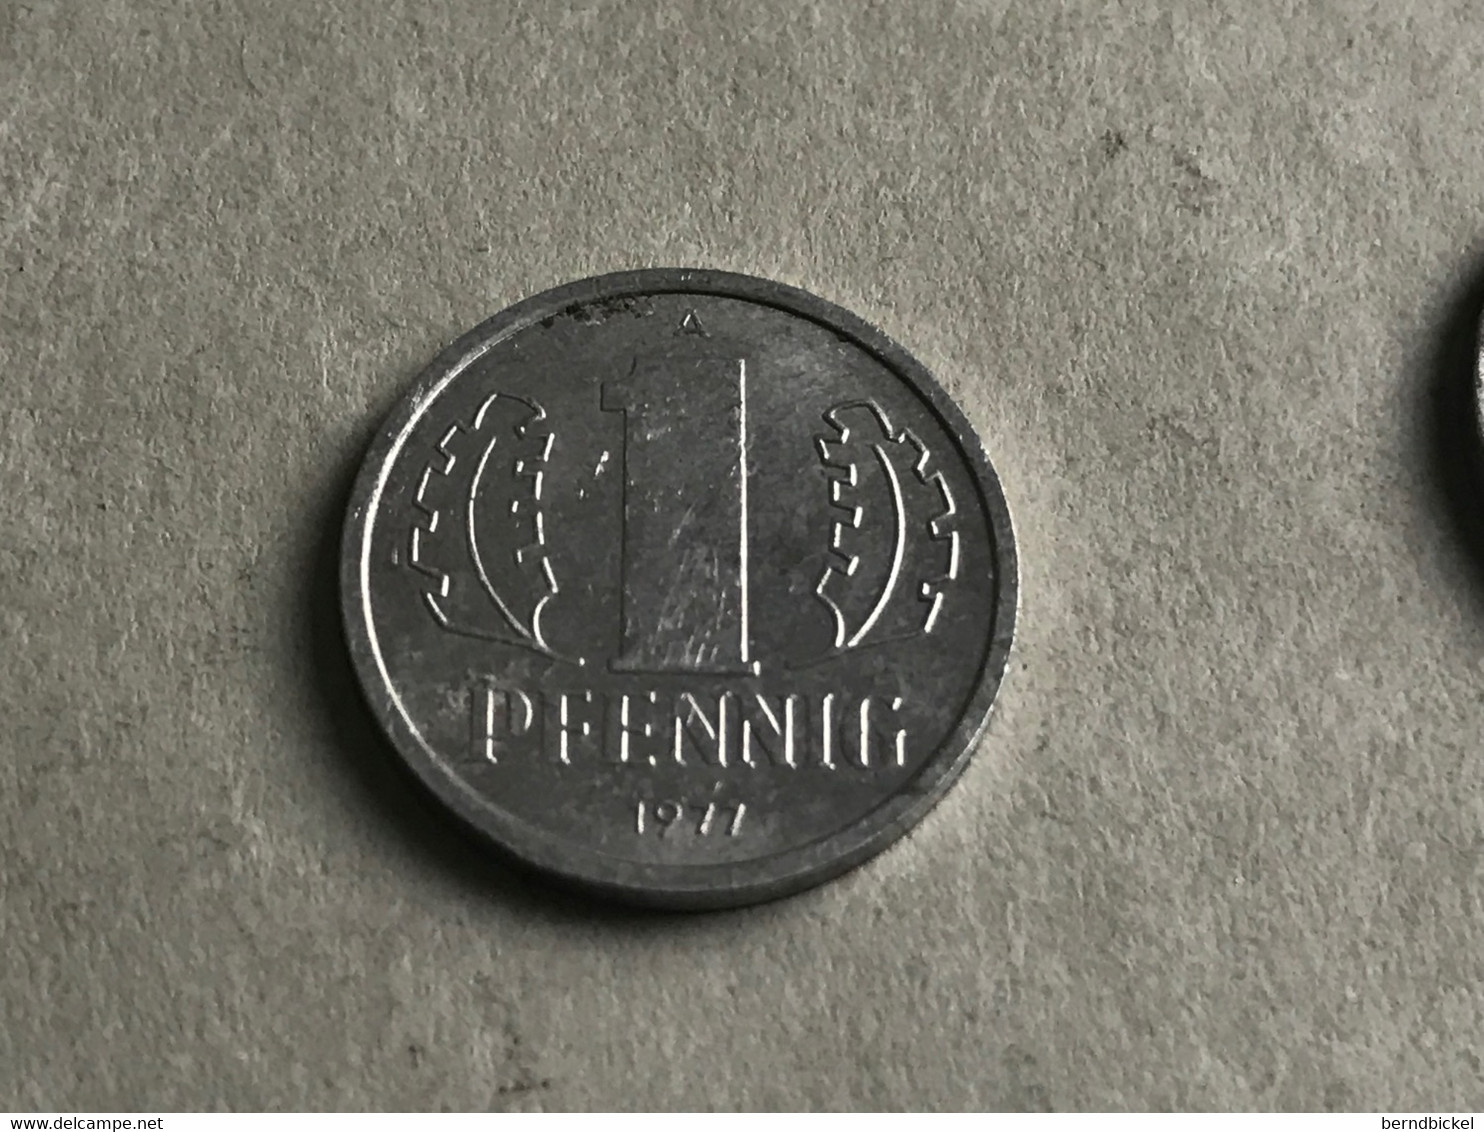 Münze Münzen Umlaufmünze Deutschland DDR 1 Pfennig 1977 - 1 Pfennig